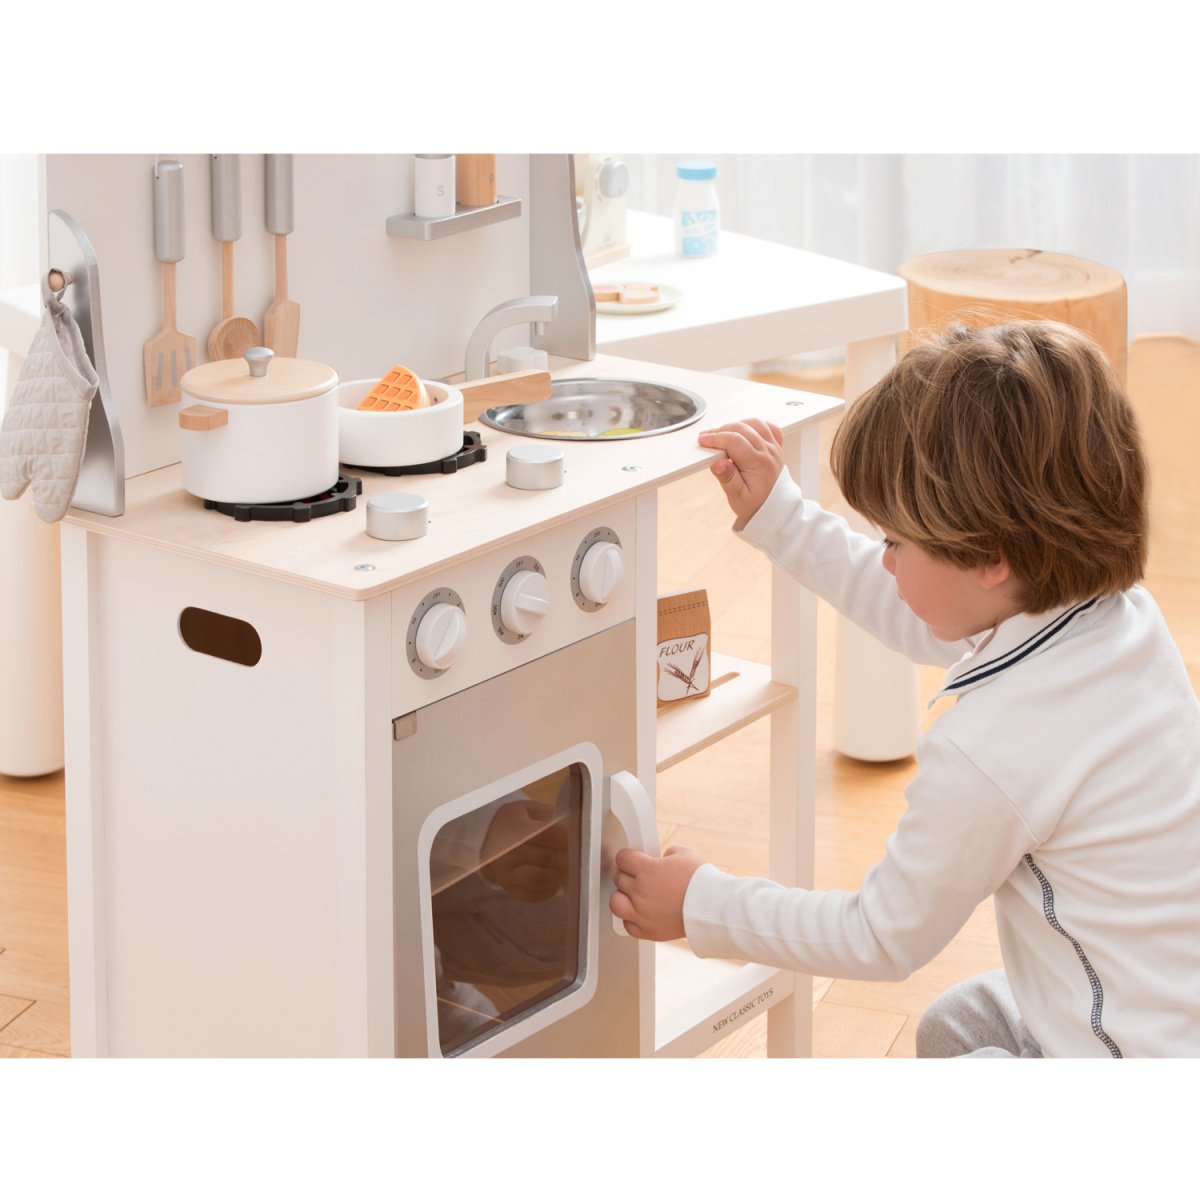 Игрушечная мини-кухня New Classic Toys Приятного аппетита, белый (11053) - фото 7